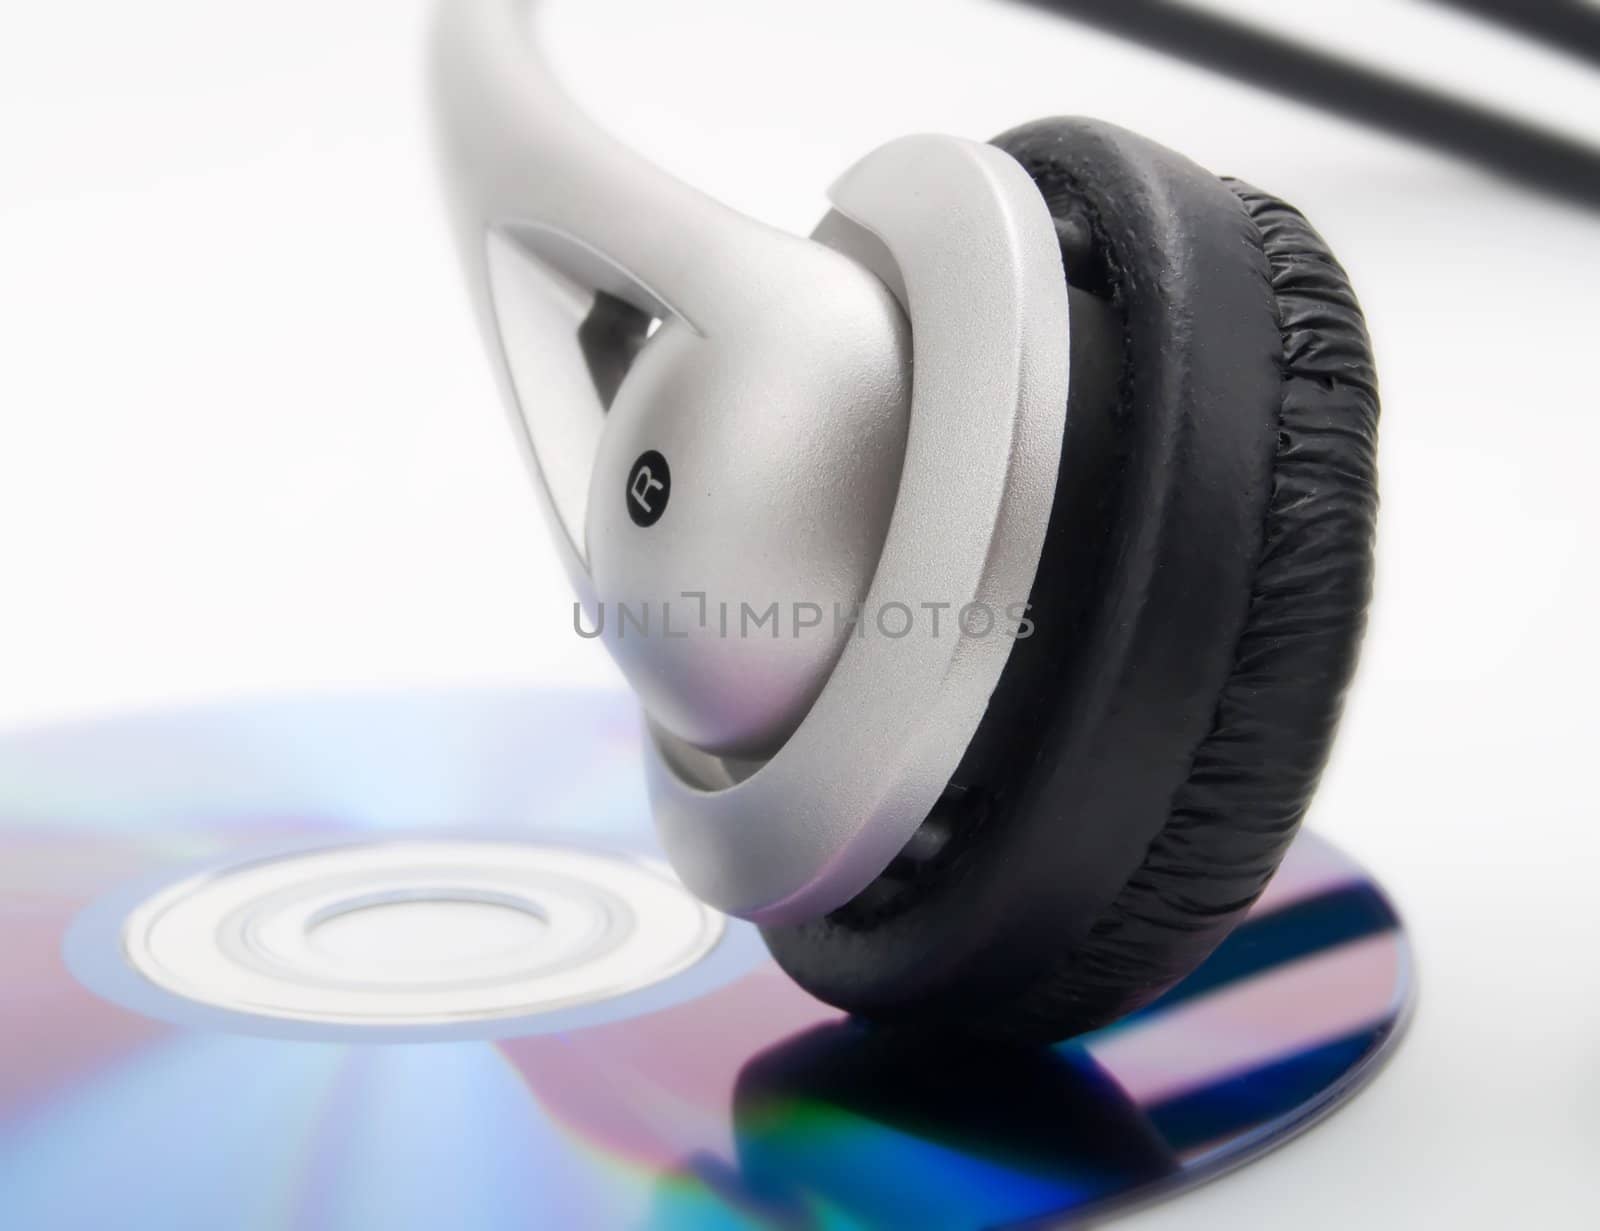 Headphones and cd by henrischmit